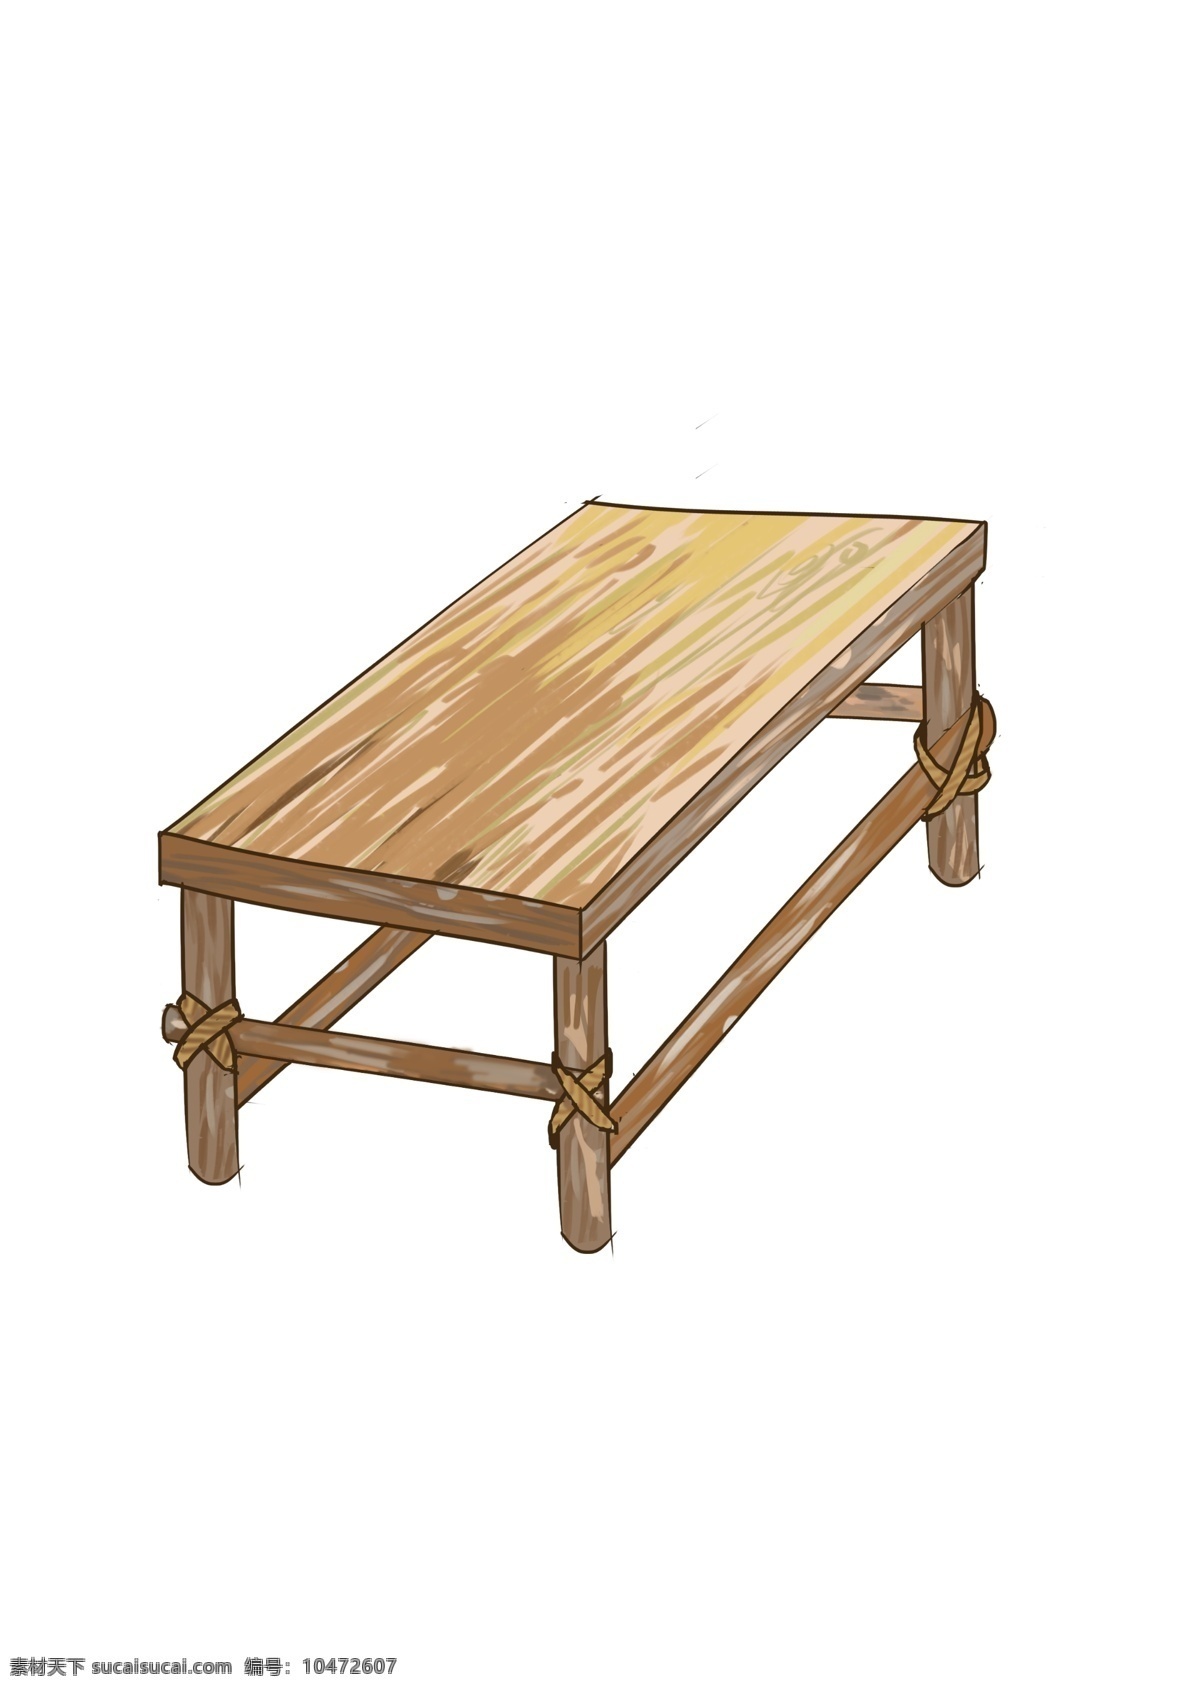 手绘木桌 手绘 木头 材质 桌子 手工